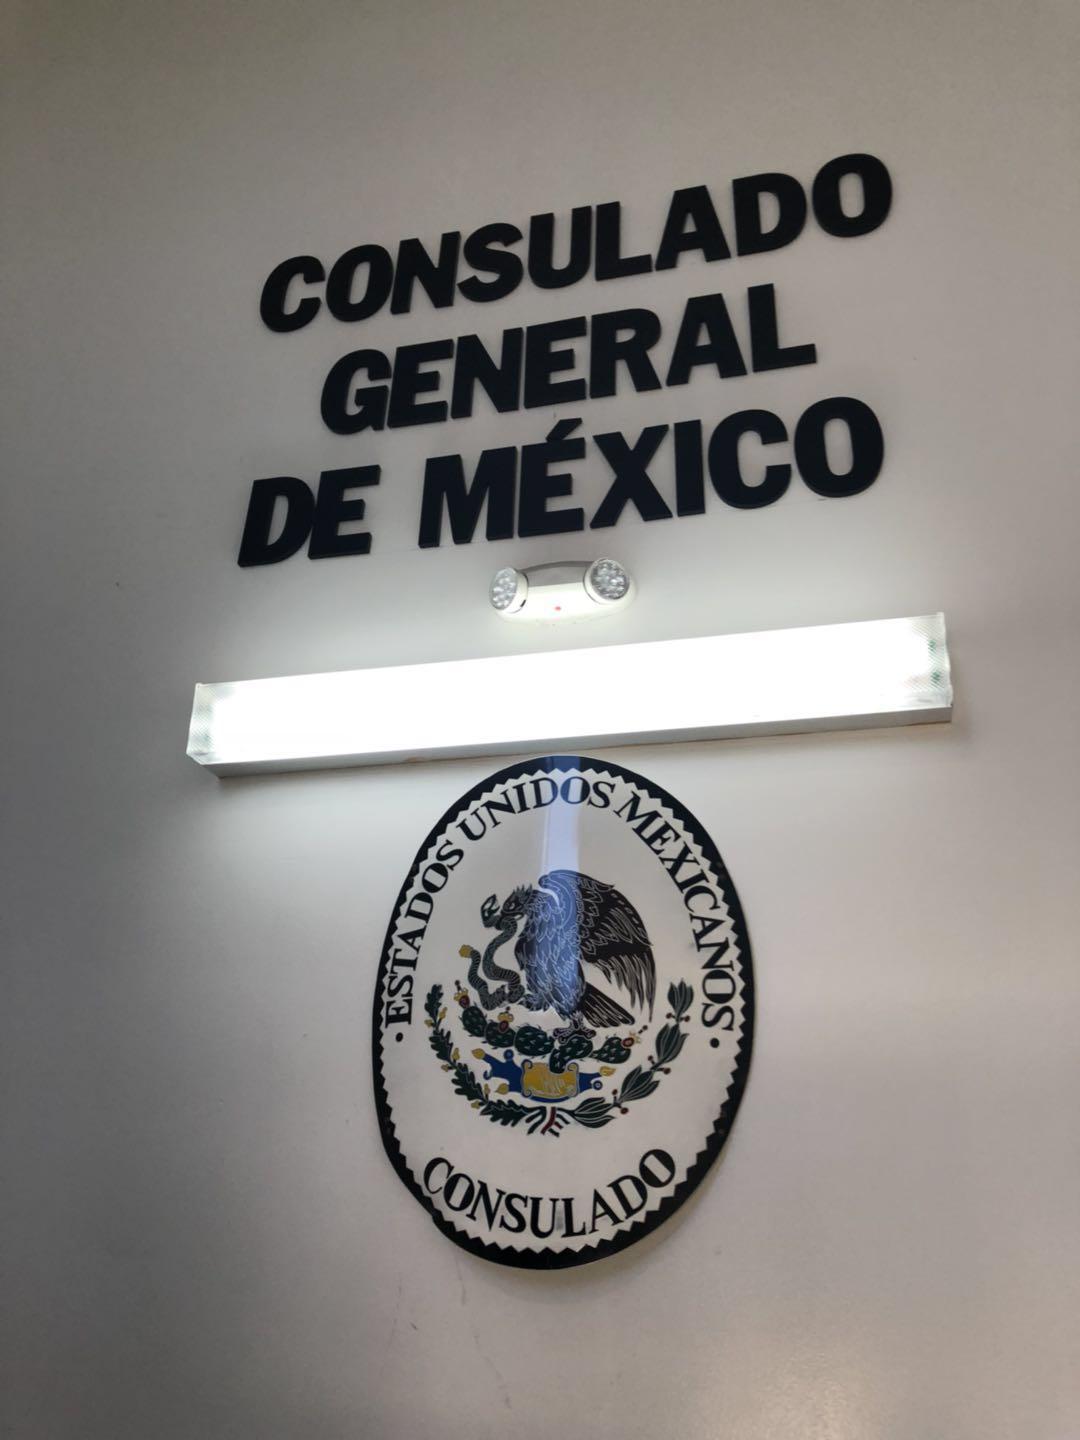 如何办理墨西哥签证 - 知乎